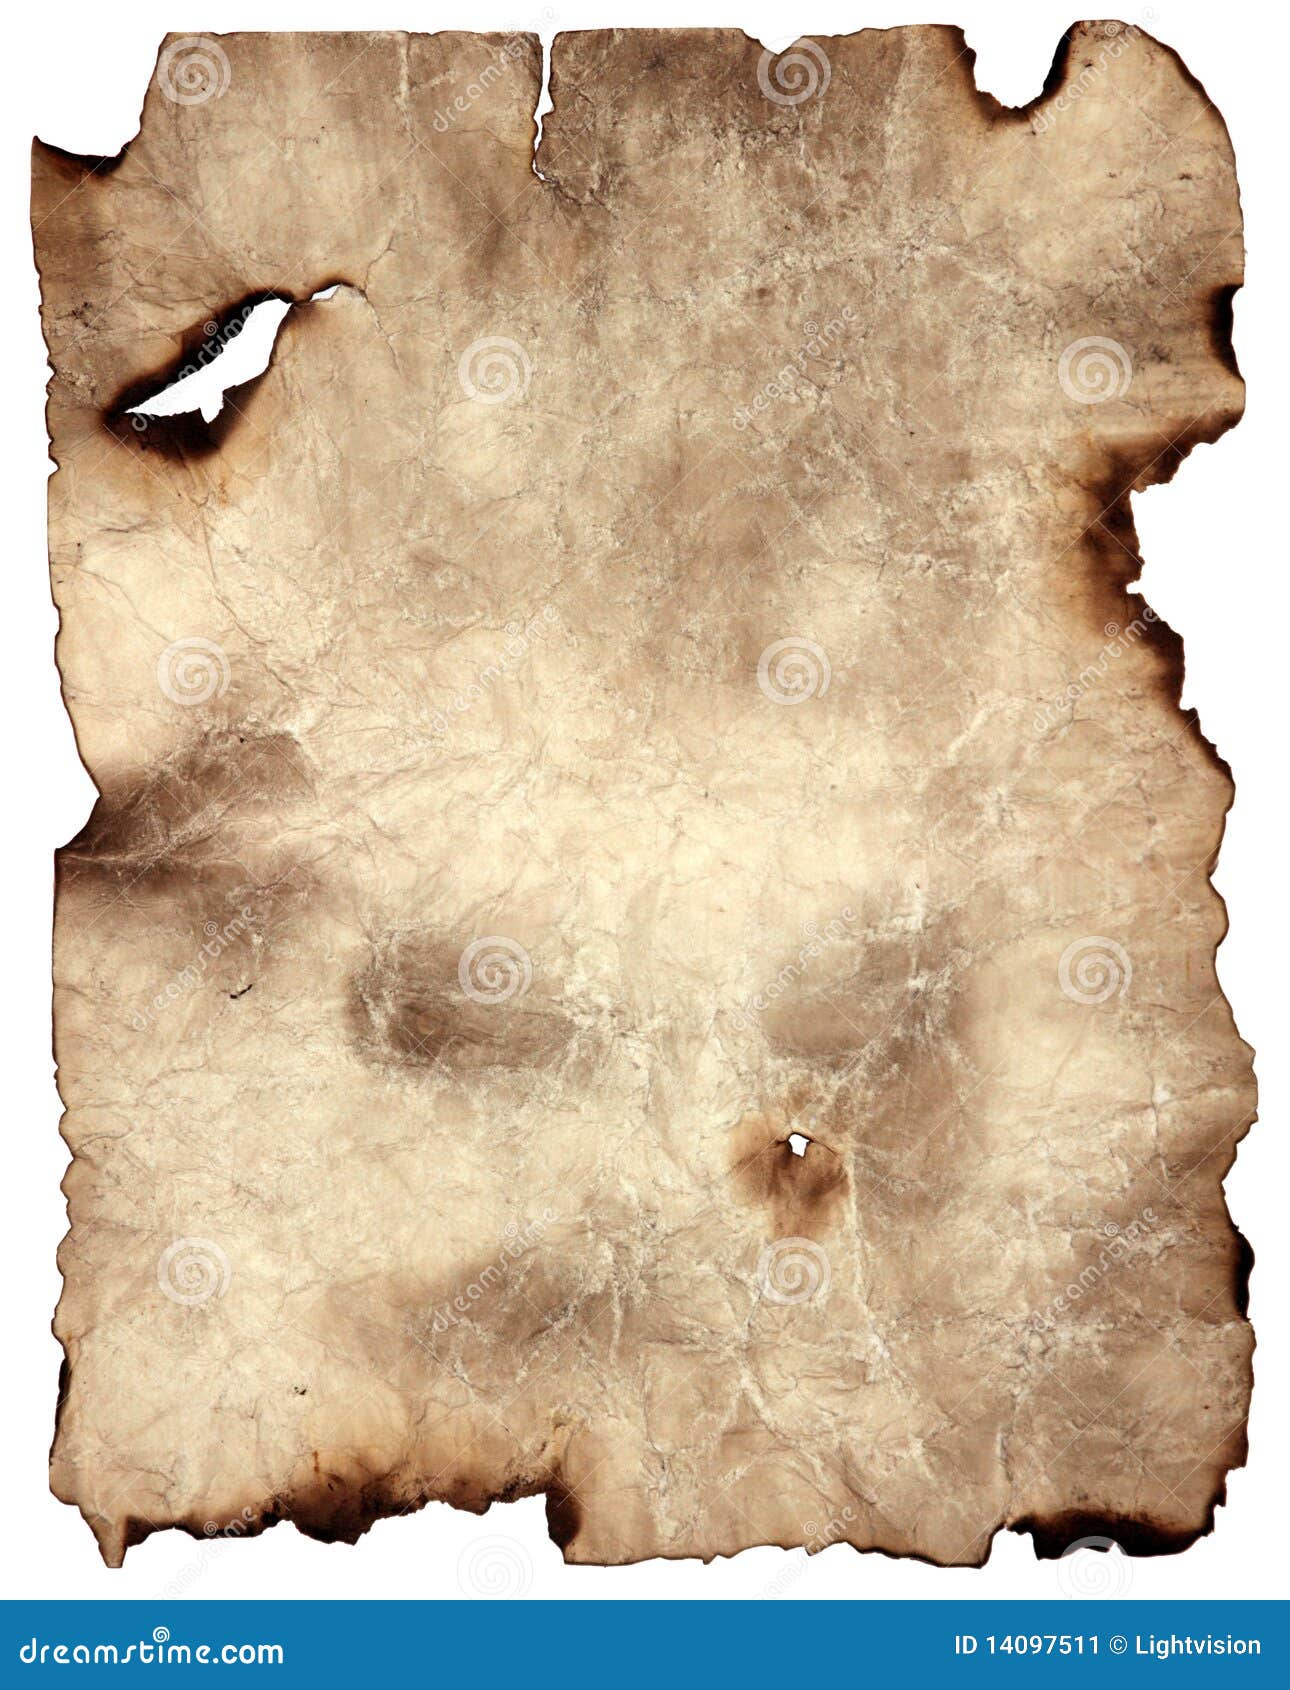 burnt parchment paper